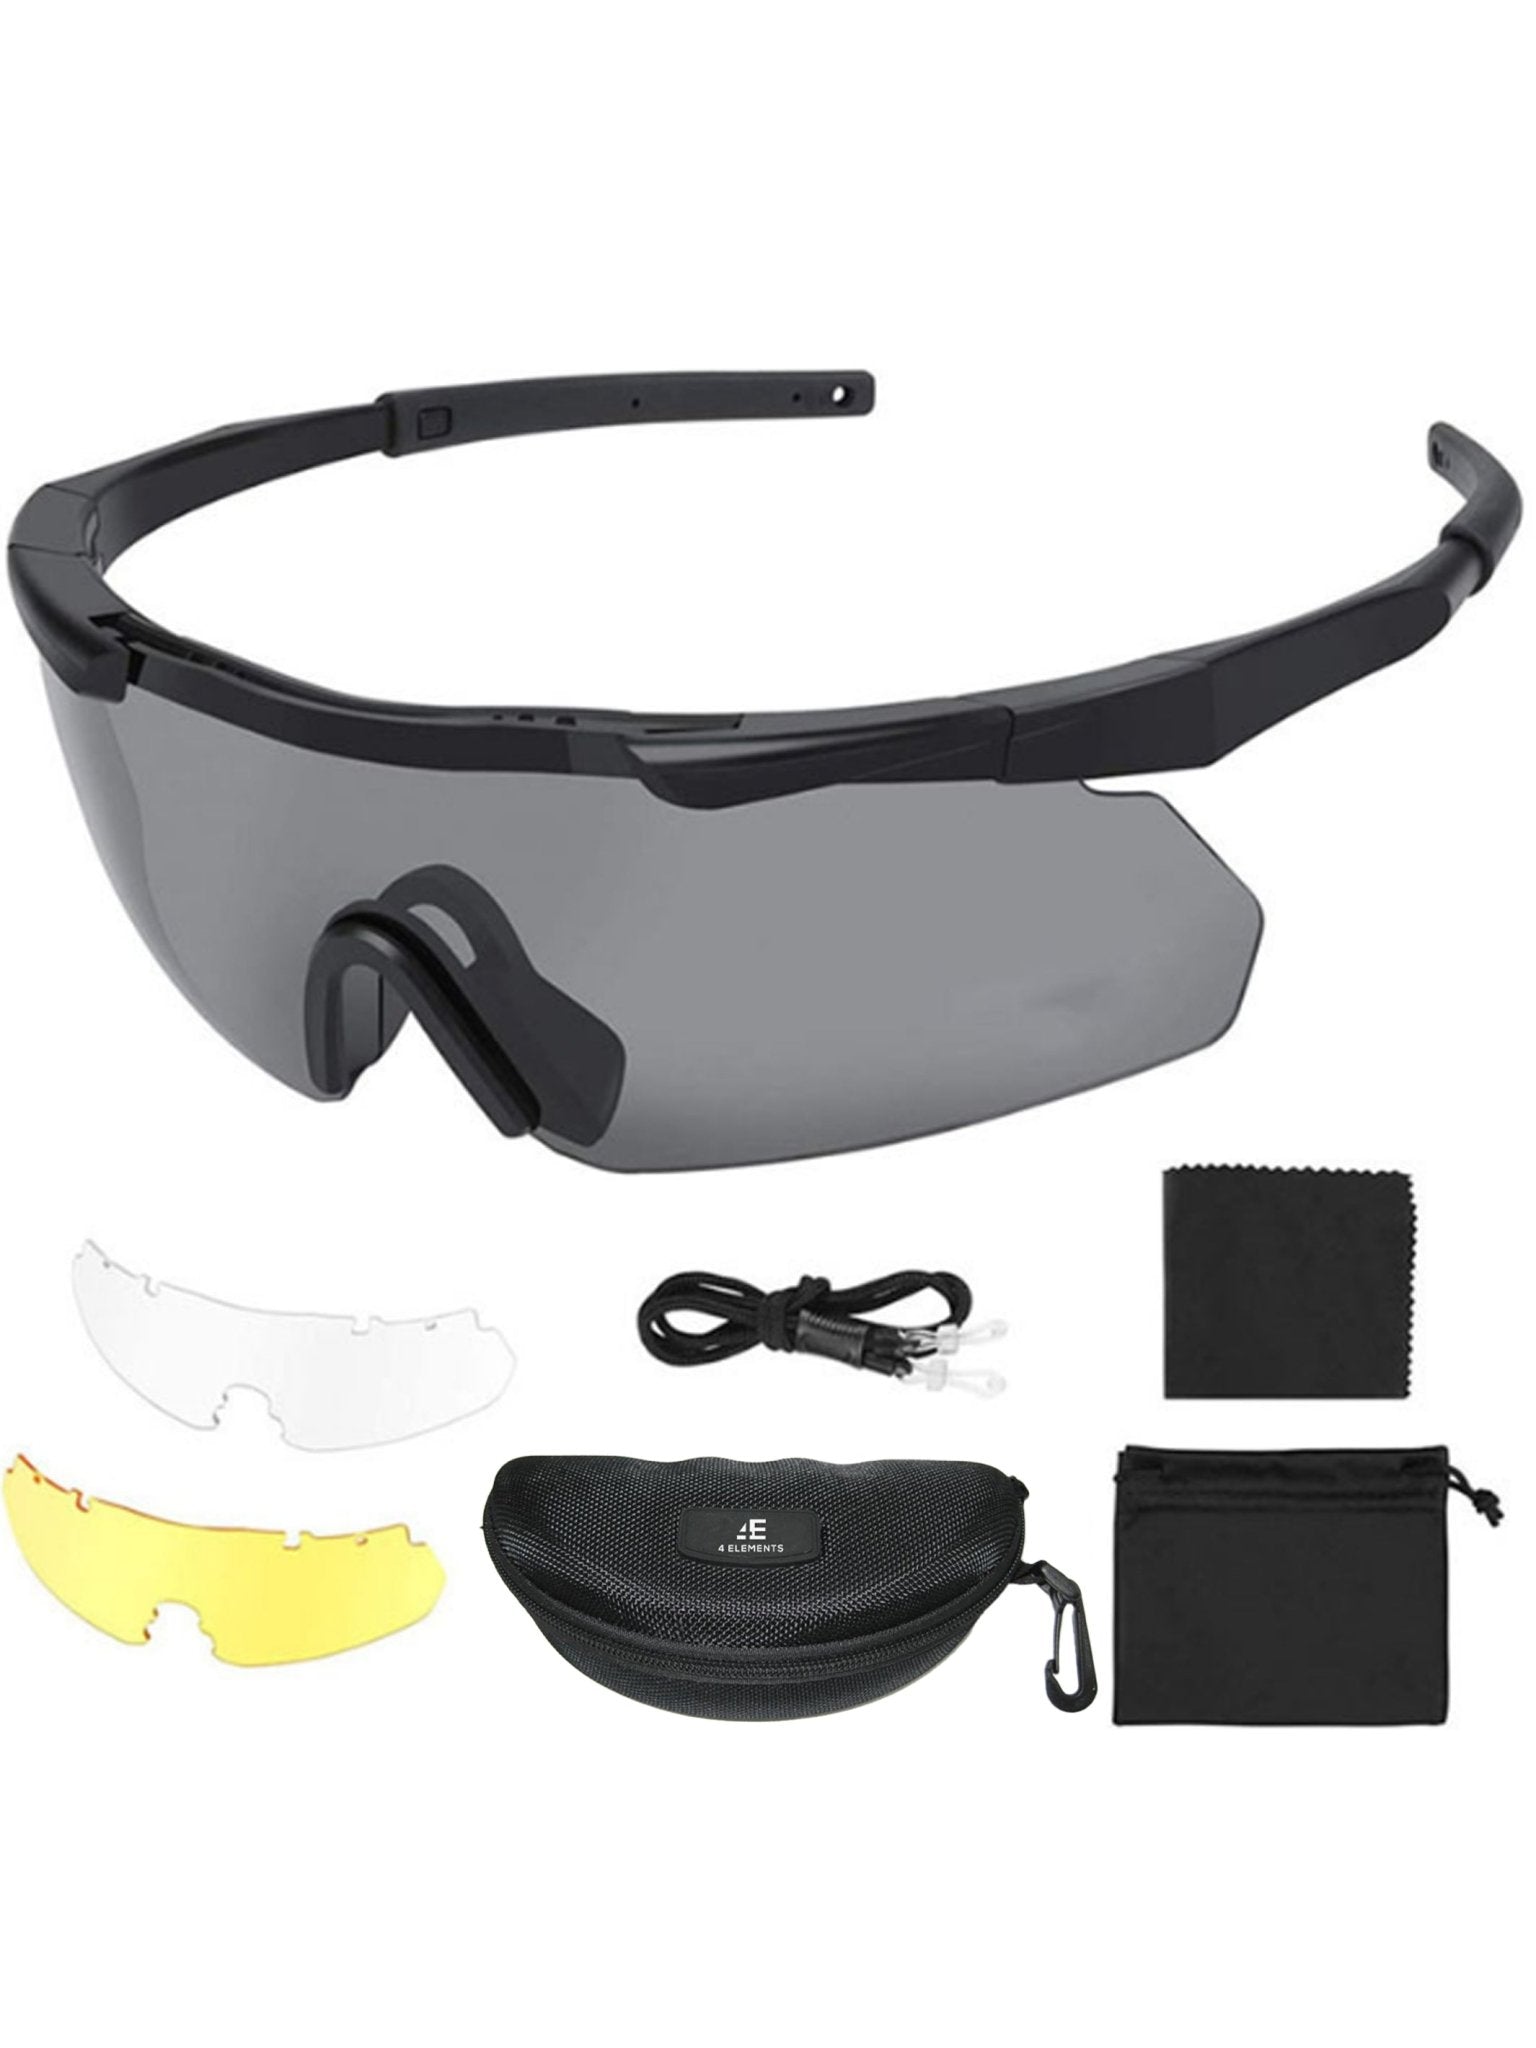 4elementsclothing4 Elements Clothing4 Elements - Shooting Glasses / Eye protection Clay Pigeon / eyewear skeet glassessunglasses4EC-GLASSES-PACKAGE